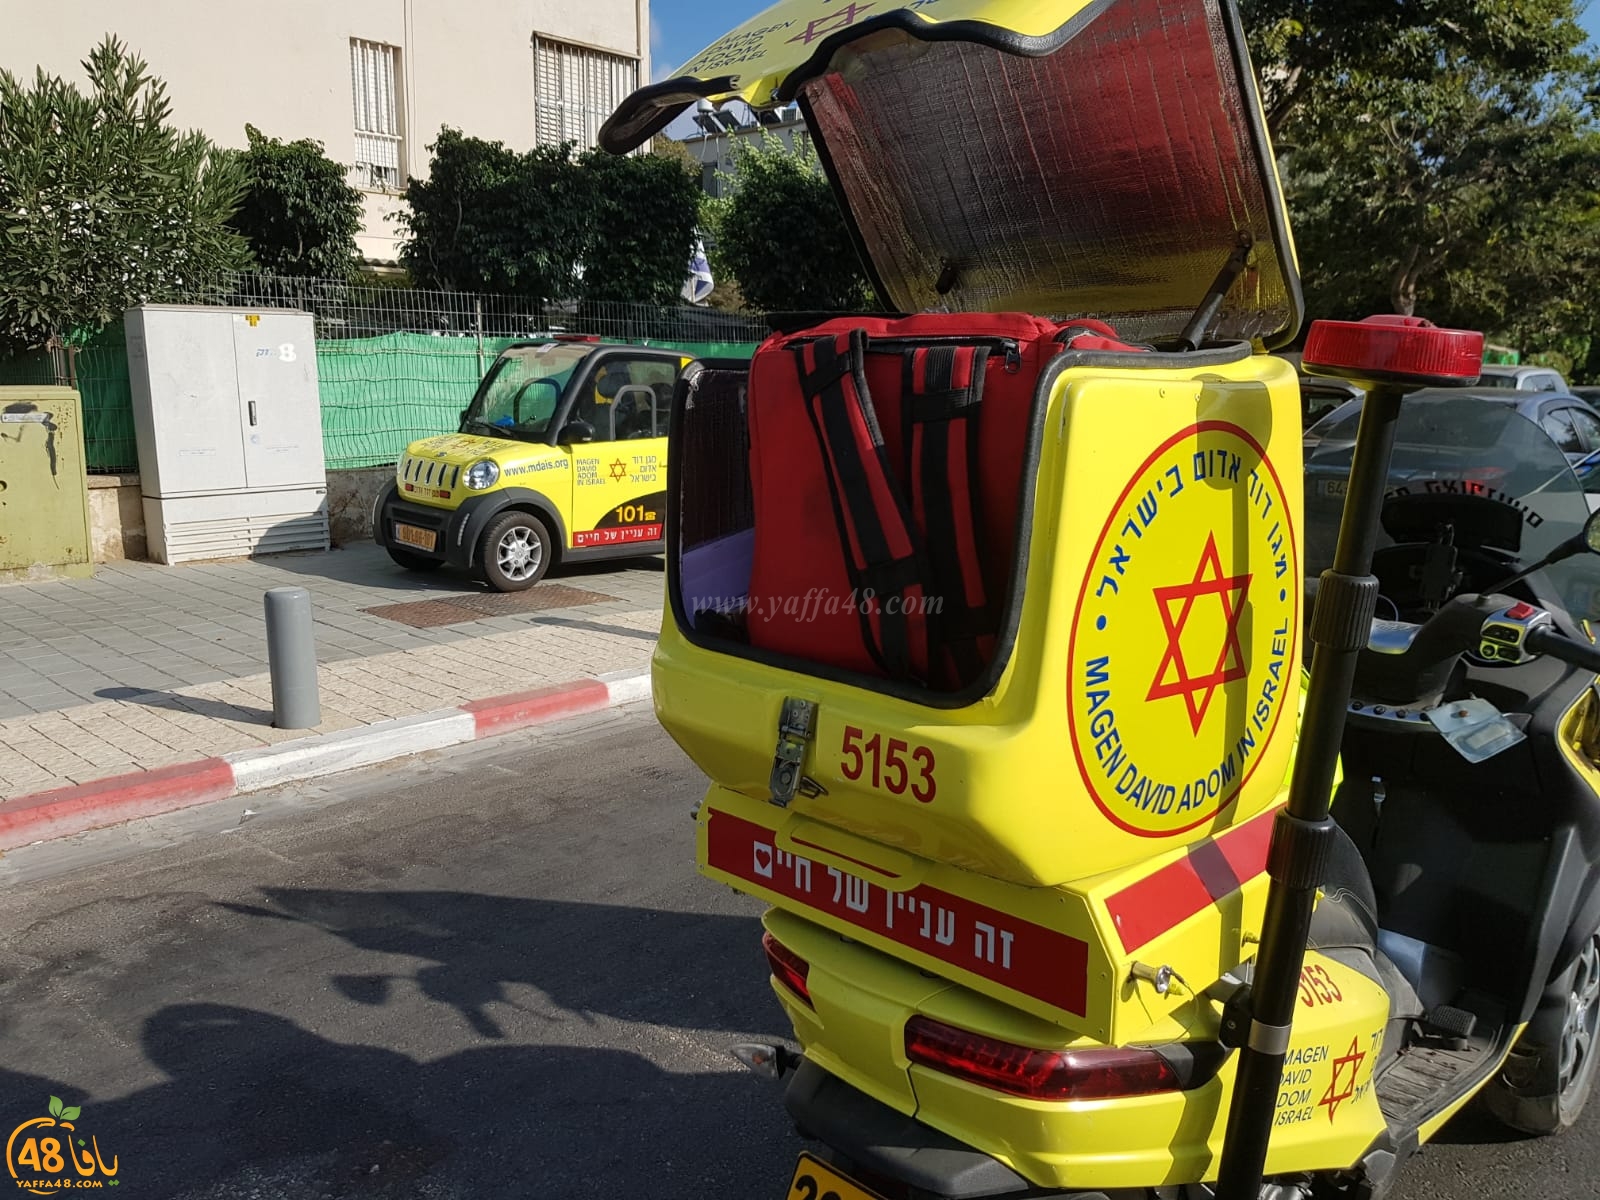  صور: اصابة متوسطة لفتى 15 عاماً بحادث دهس في مدينة يافا 